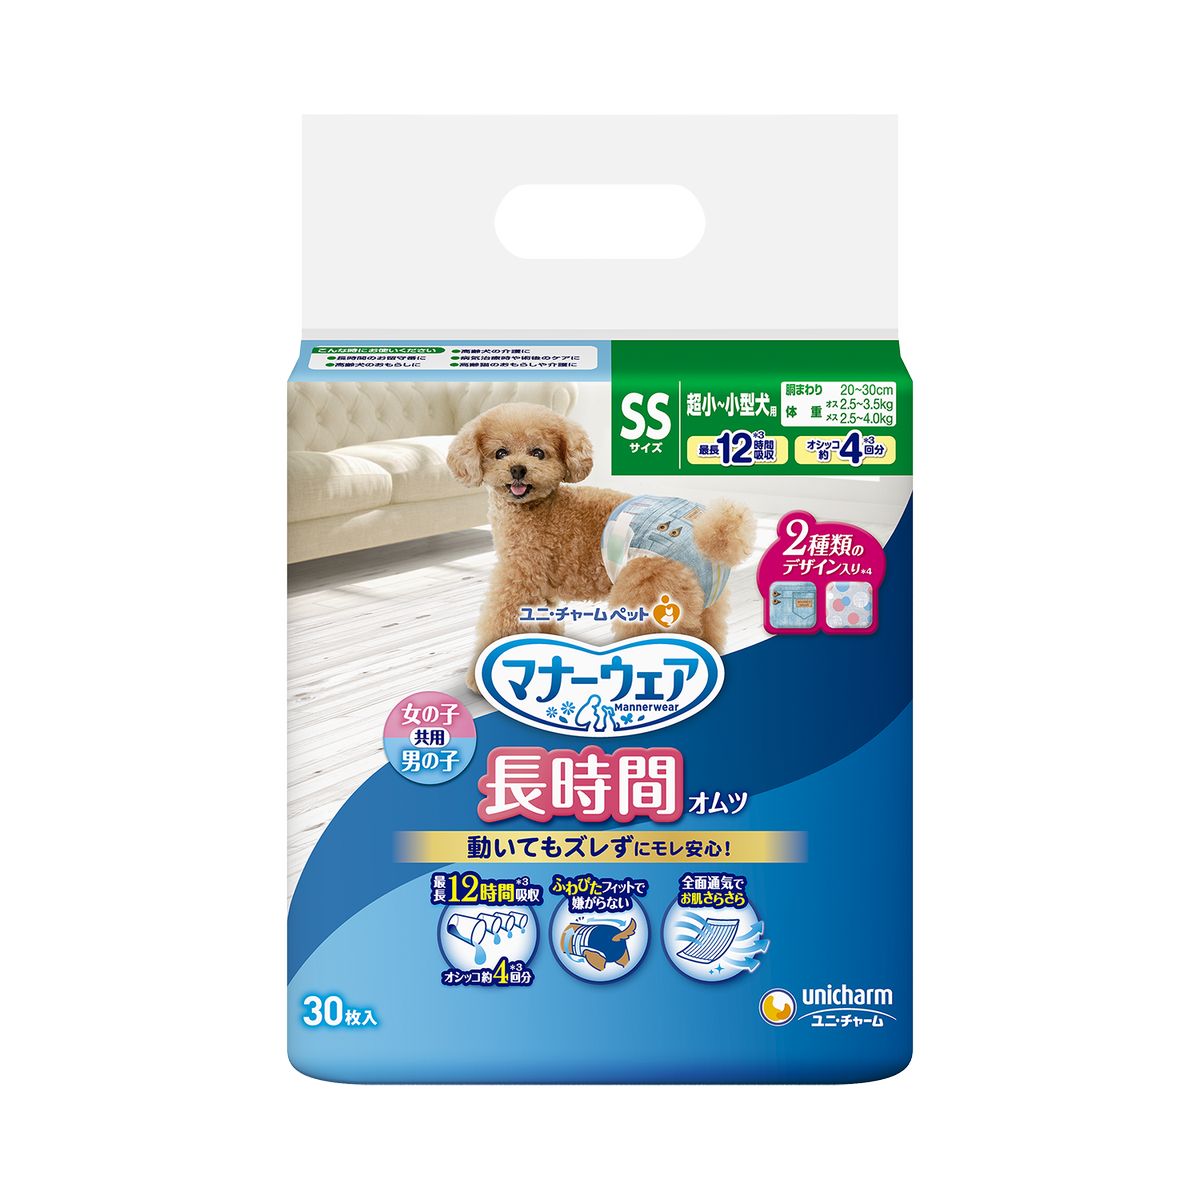 【送料無料】ユニチャーム マナーウェア 高齢犬用紙オムツ SSサイズ 30枚×8袋